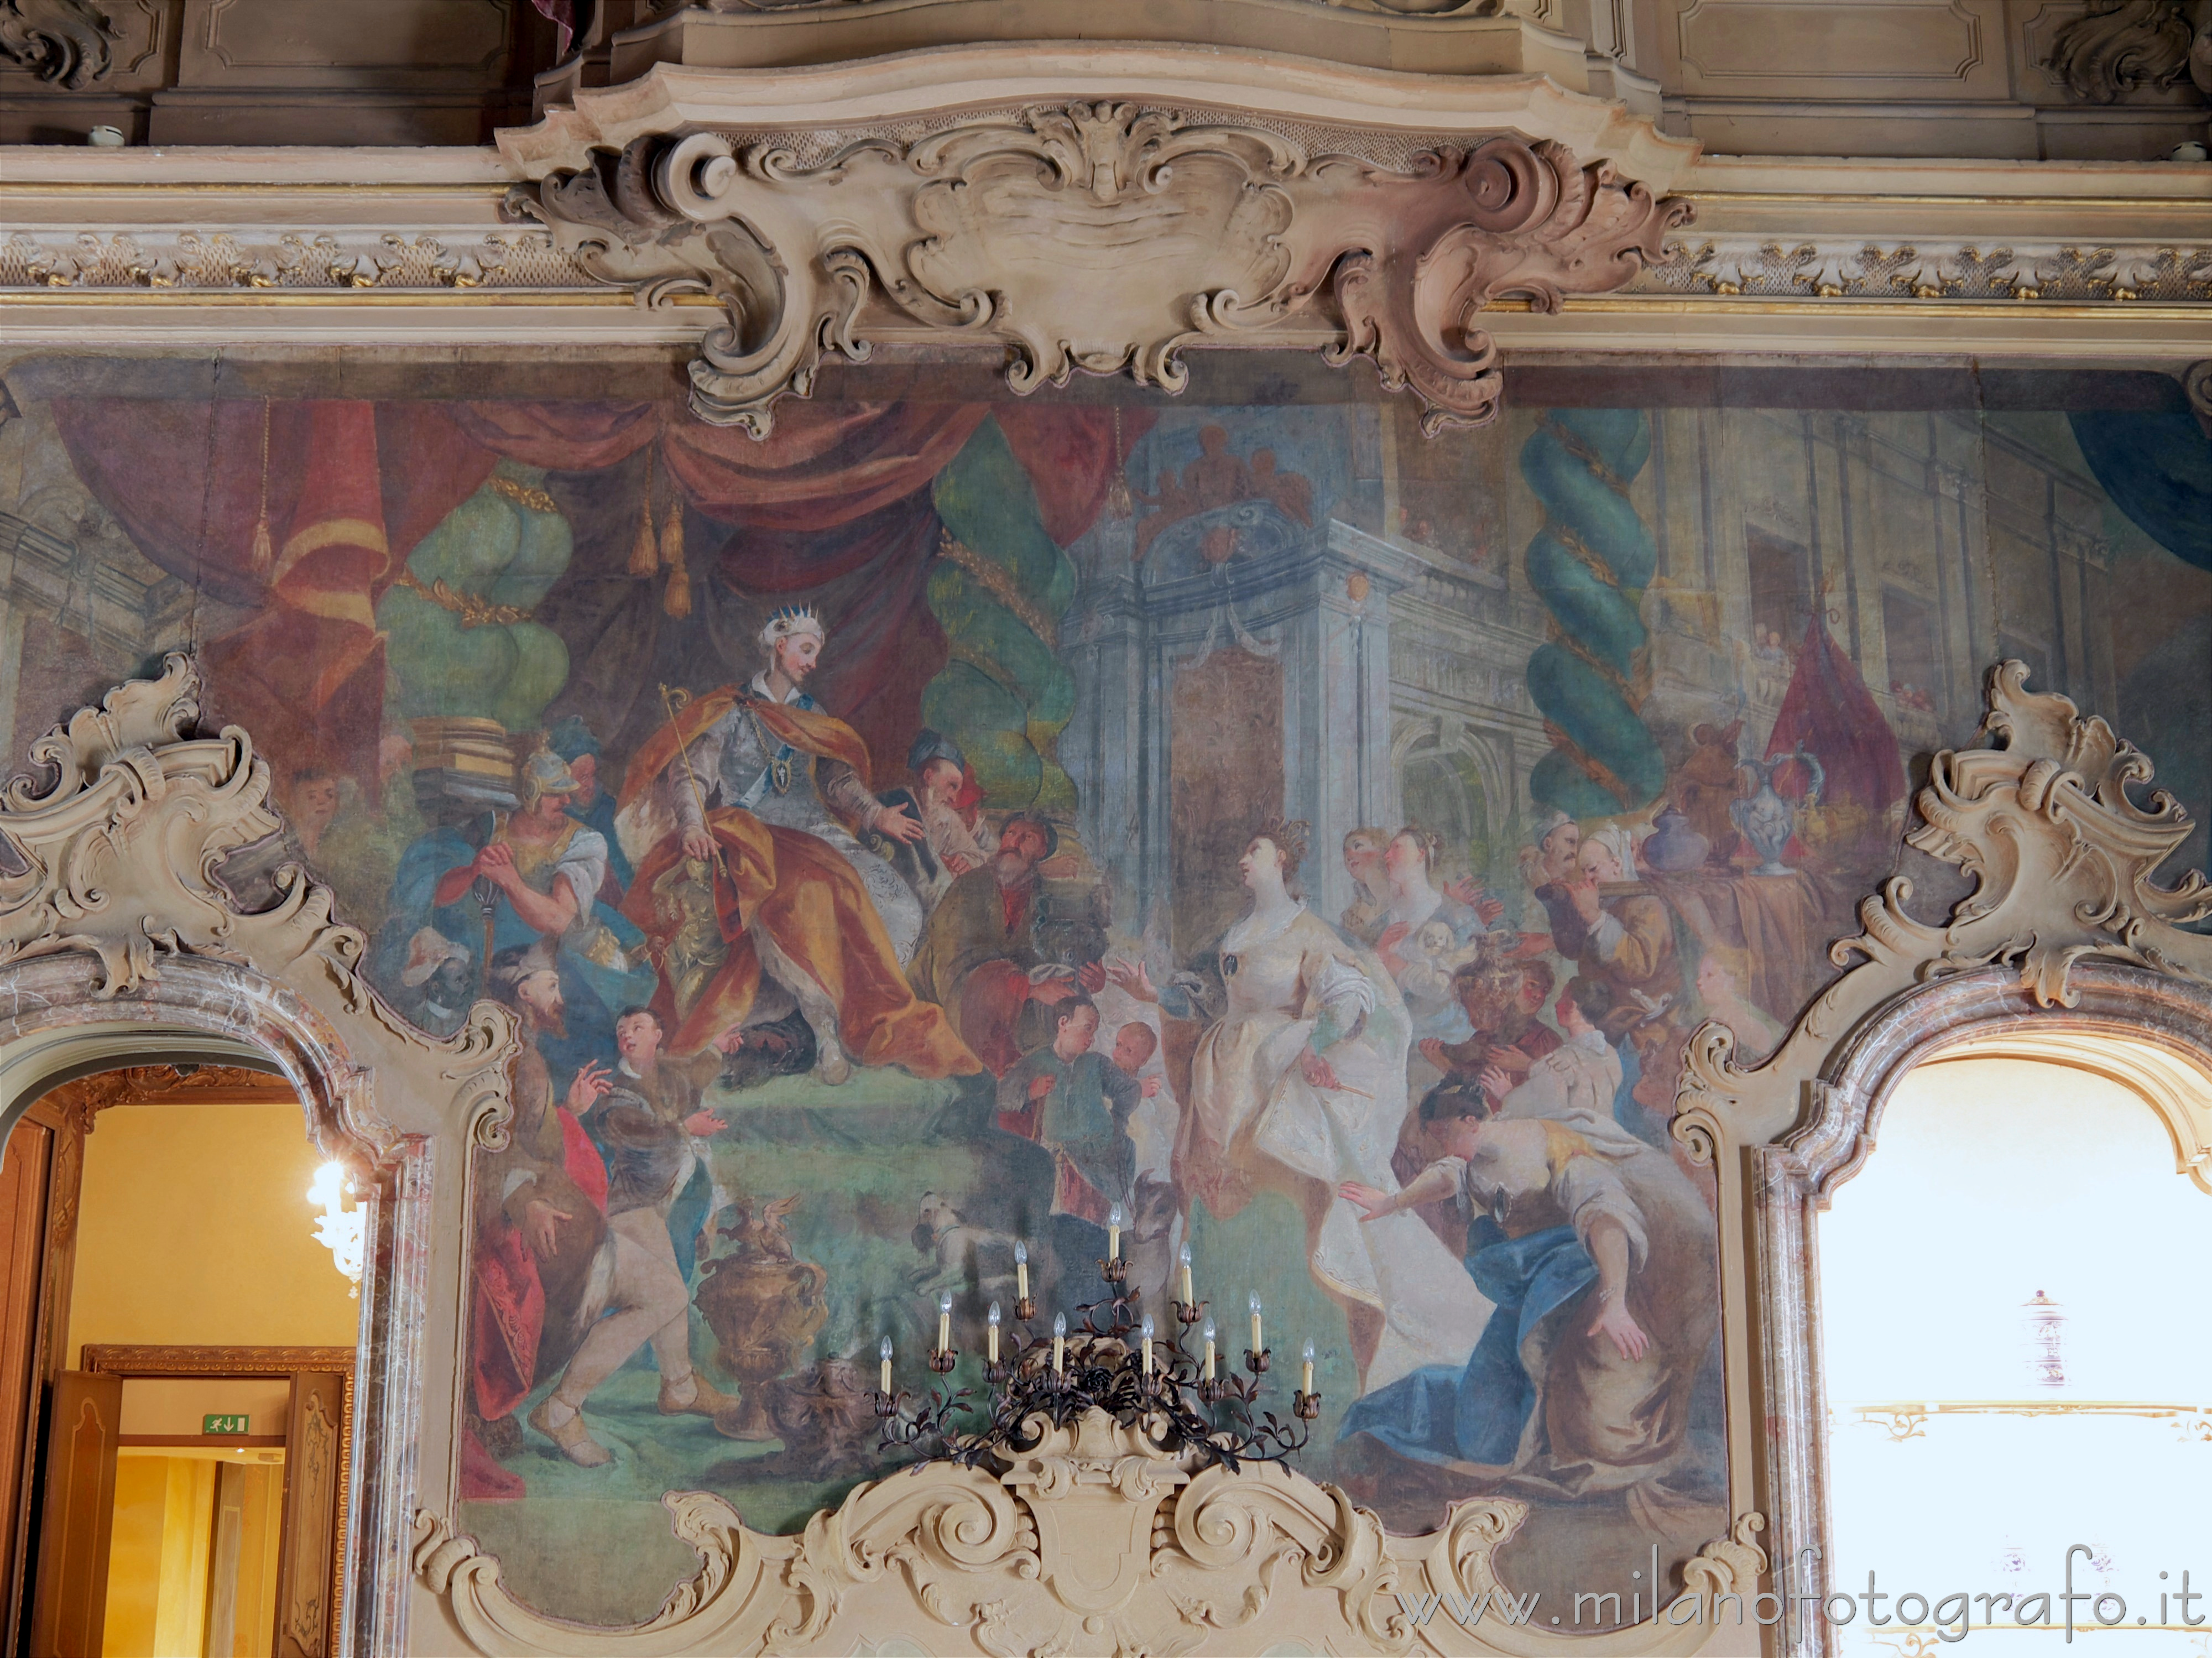 Milano: Telero in Palazzo Visconti raffigurante l'Incontro fra Re Salomone e la Regina di Saba - Milano